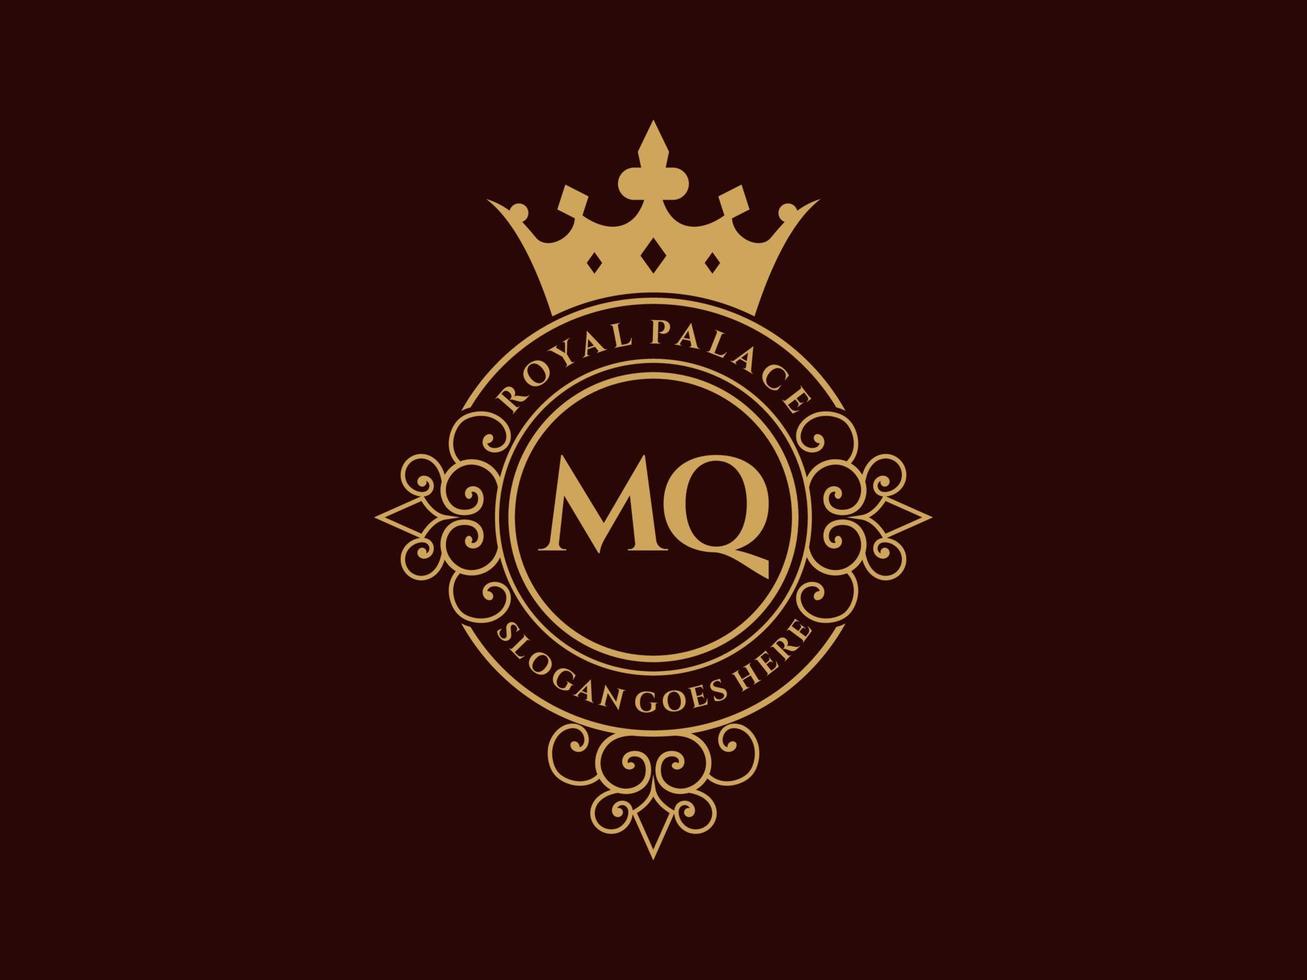 brief mq antiek Koninklijk luxe Victoriaans logo met sier- kader. vector